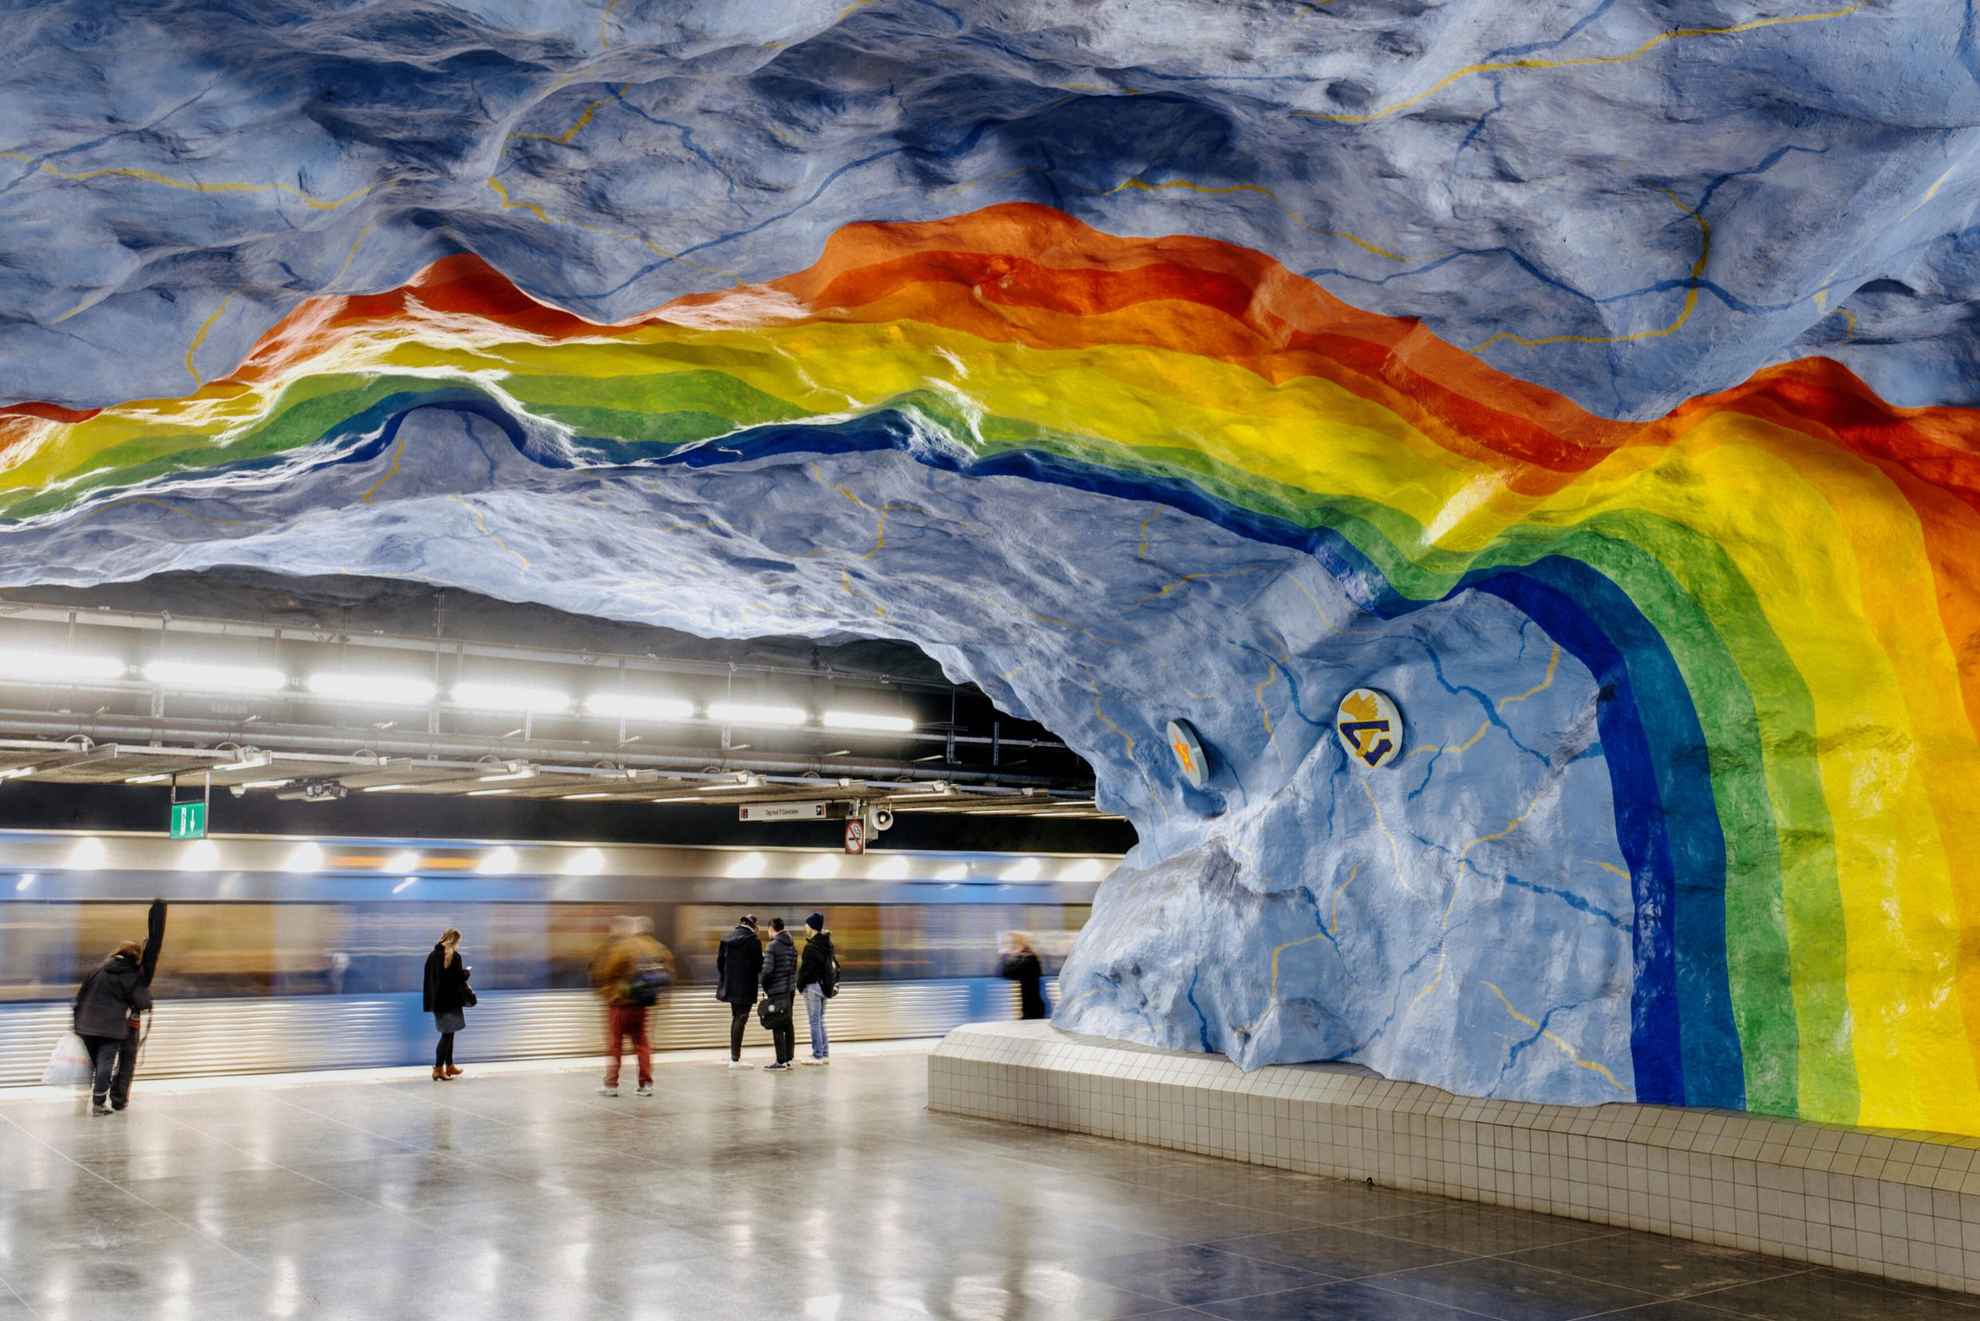 Un arc-en-ciel aux couleurs vives peint au plafond d'une station de métro.